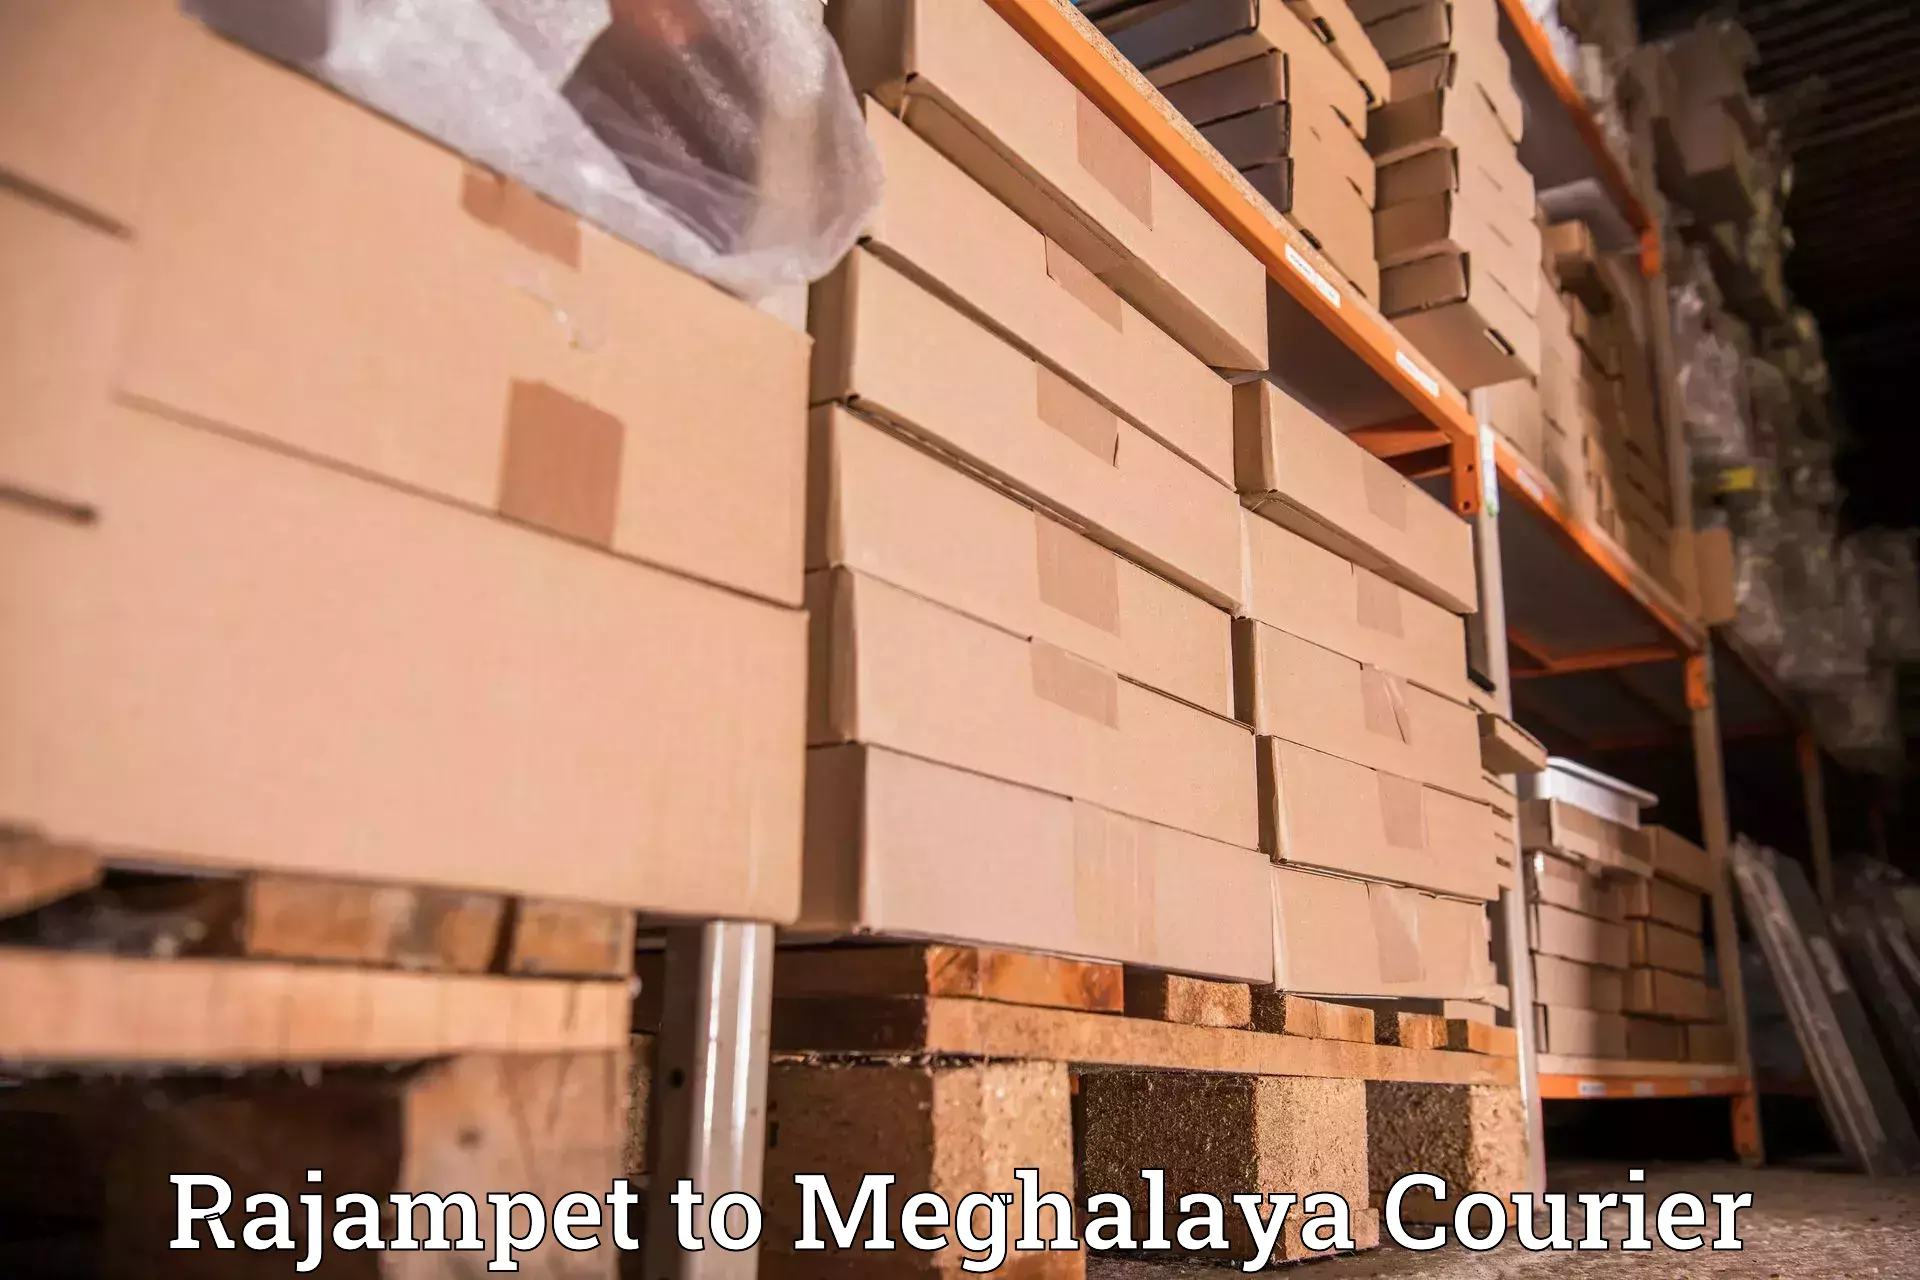 Courier membership Rajampet to Meghalaya